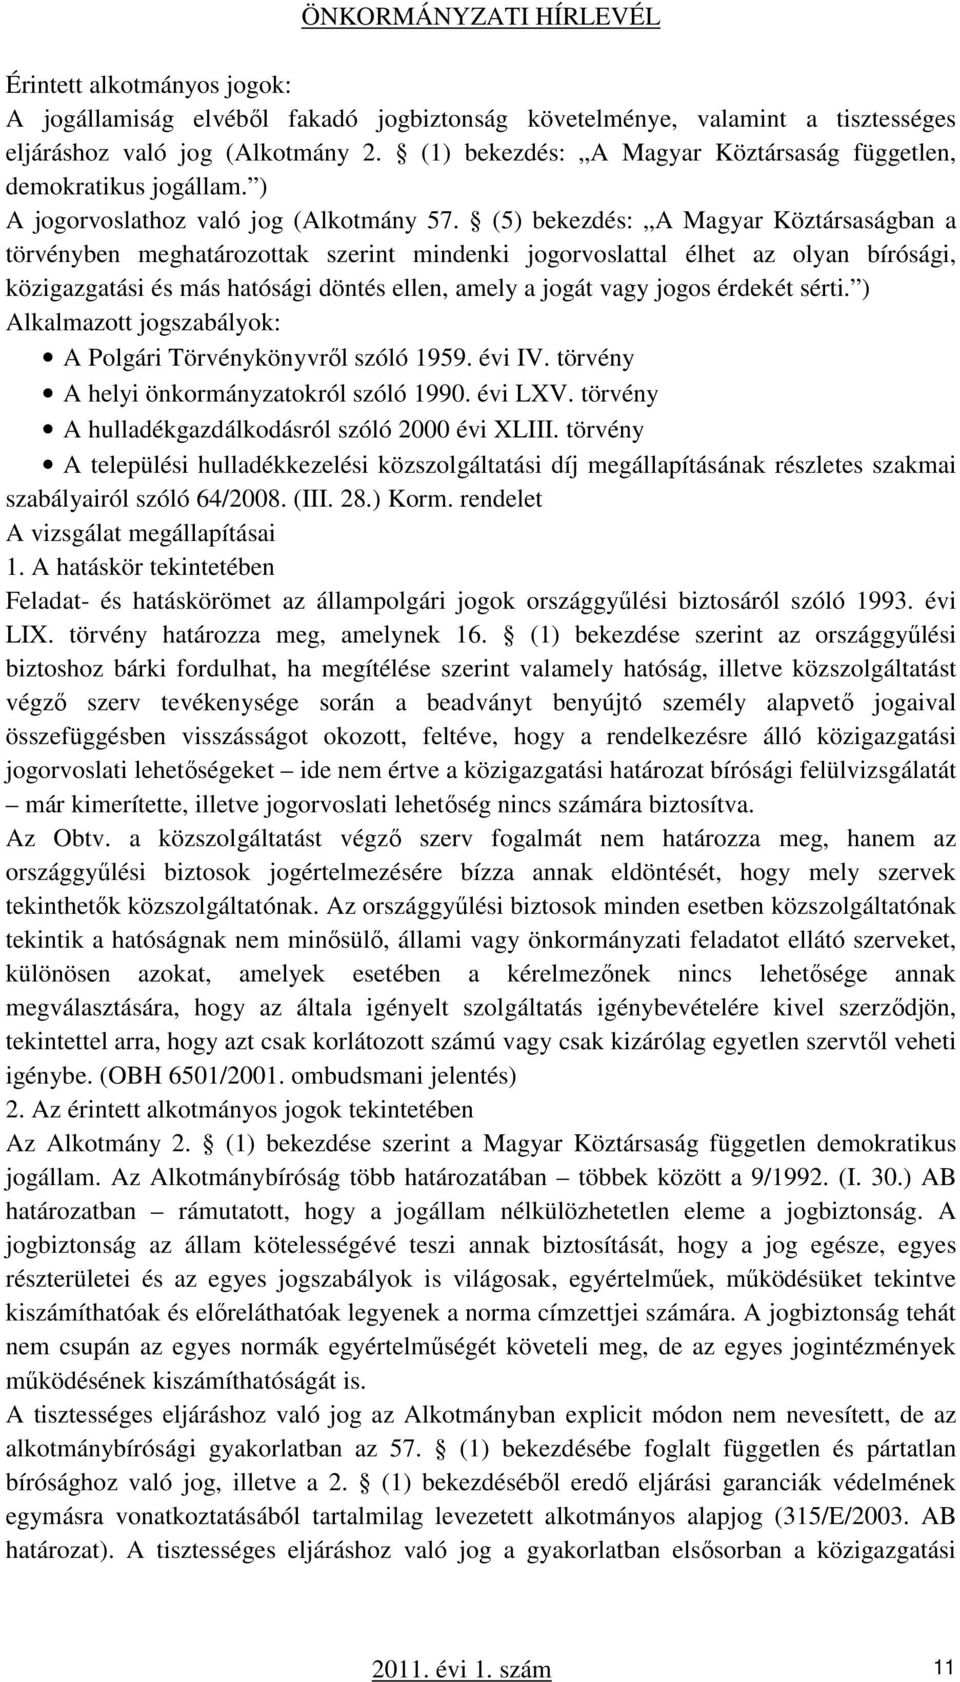 (5) bekezdés: A Magyar Köztársaságban a törvényben meghatározottak szerint mindenki jogorvoslattal élhet az olyan bírósági, közigazgatási és más hatósági döntés ellen, amely a jogát vagy jogos